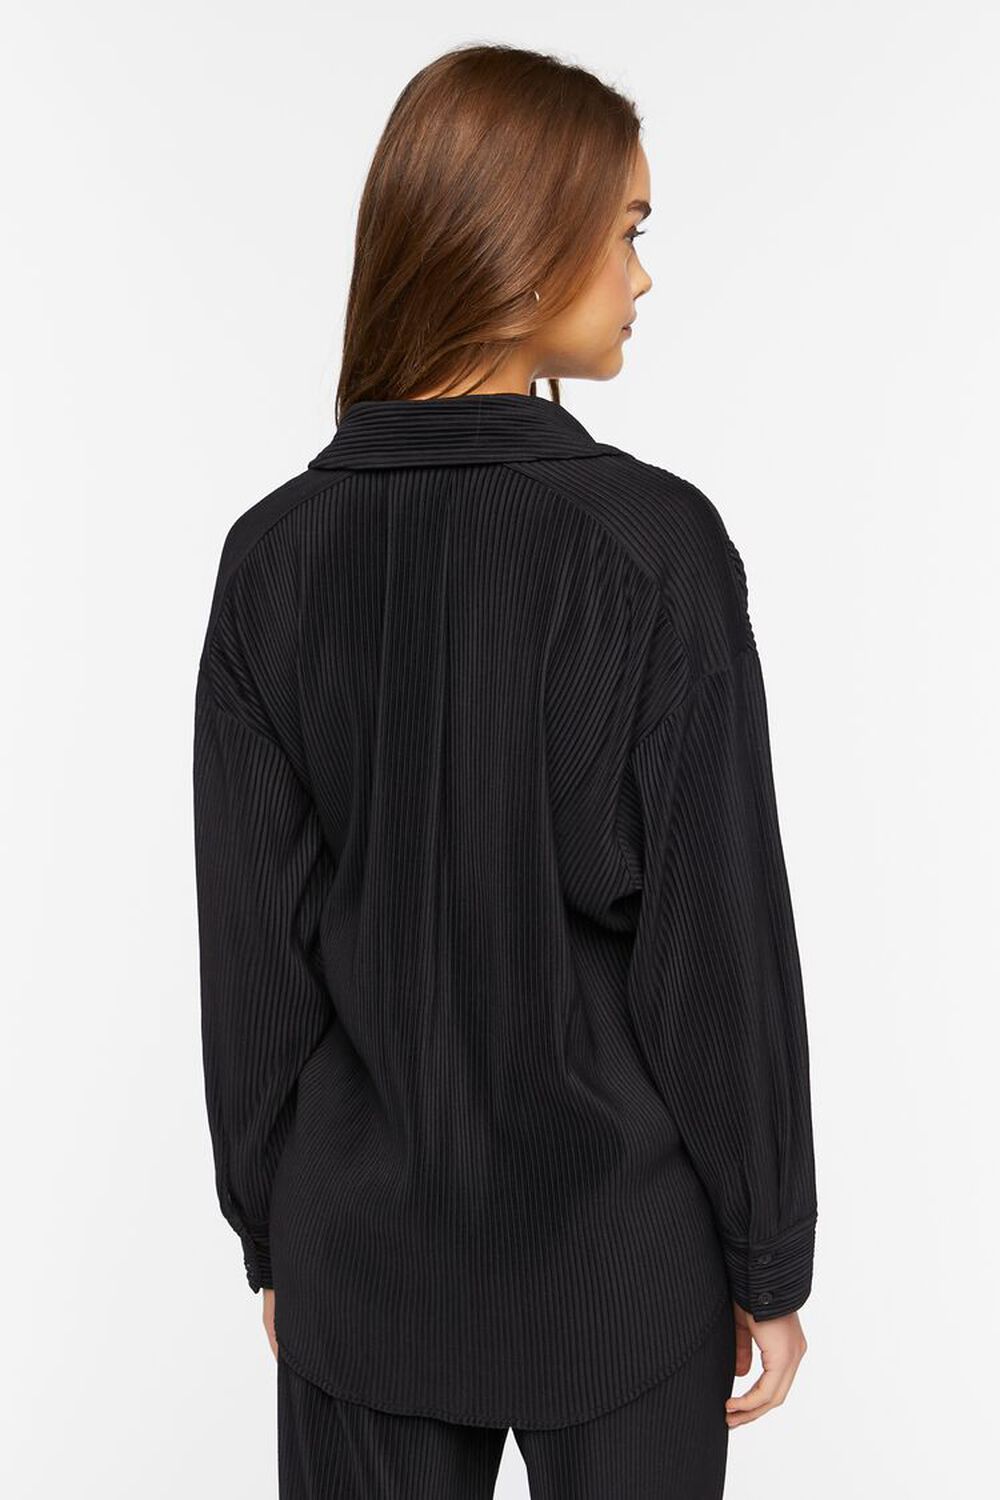 BLACK Oversized Corduroy Shirt, image 3